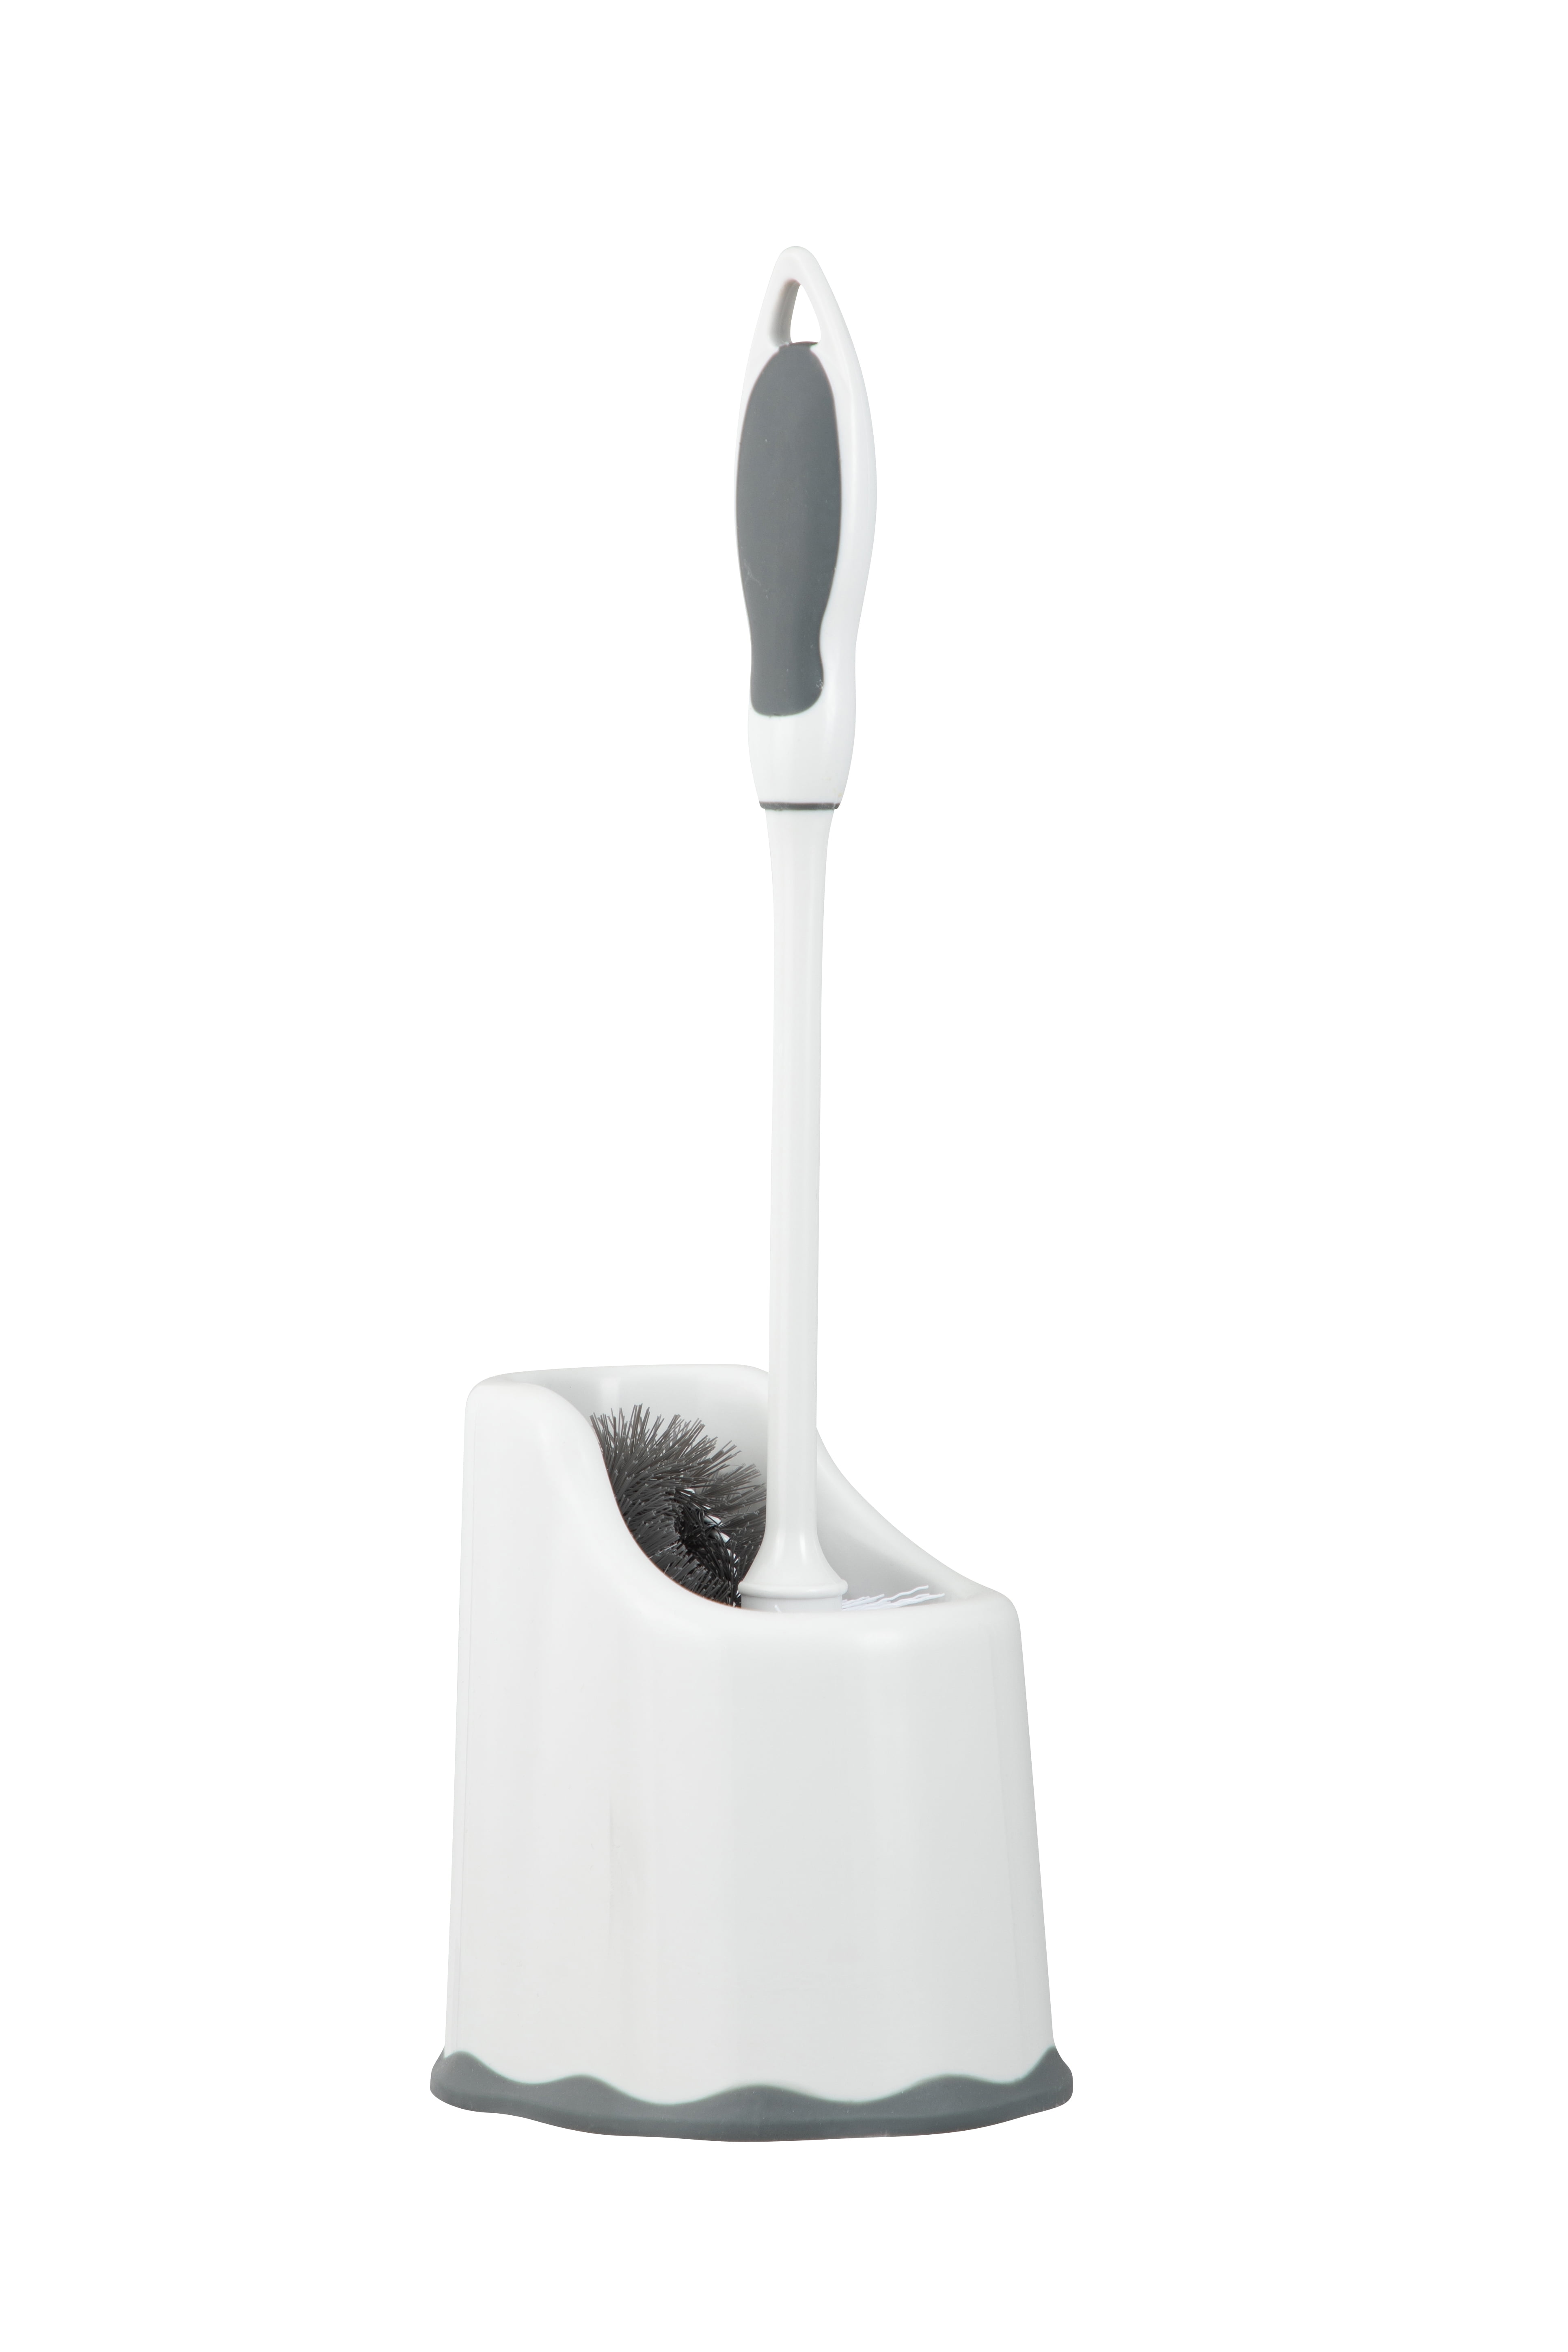 Ribbed Toilet Bowl Brush and Holder White